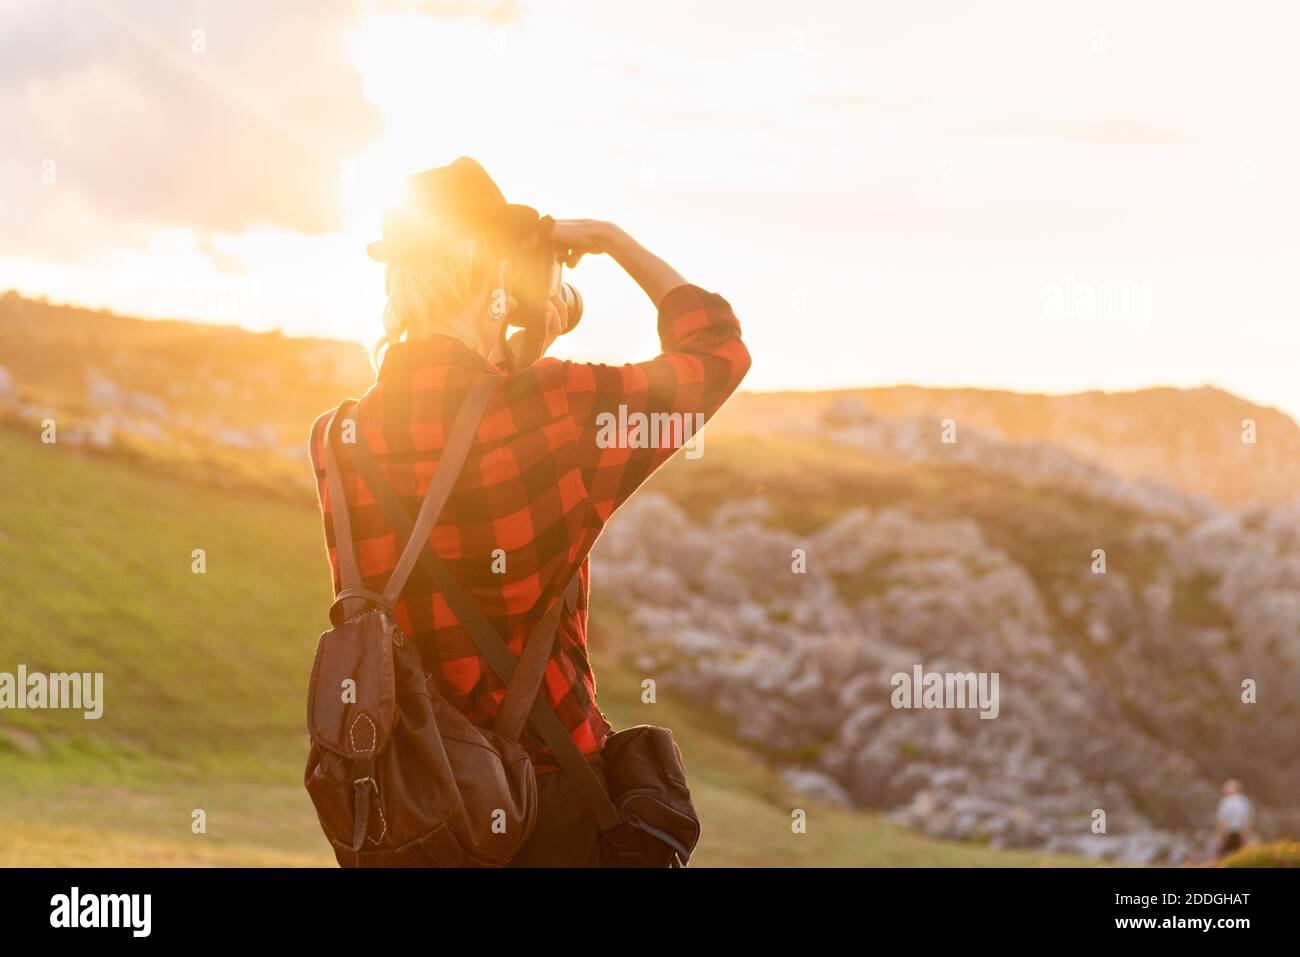 Vue arrière d'une femme voyageur androgyne avec appareil photo professionnel debout sur une colline dans une zone montagneuse Banque D'Images